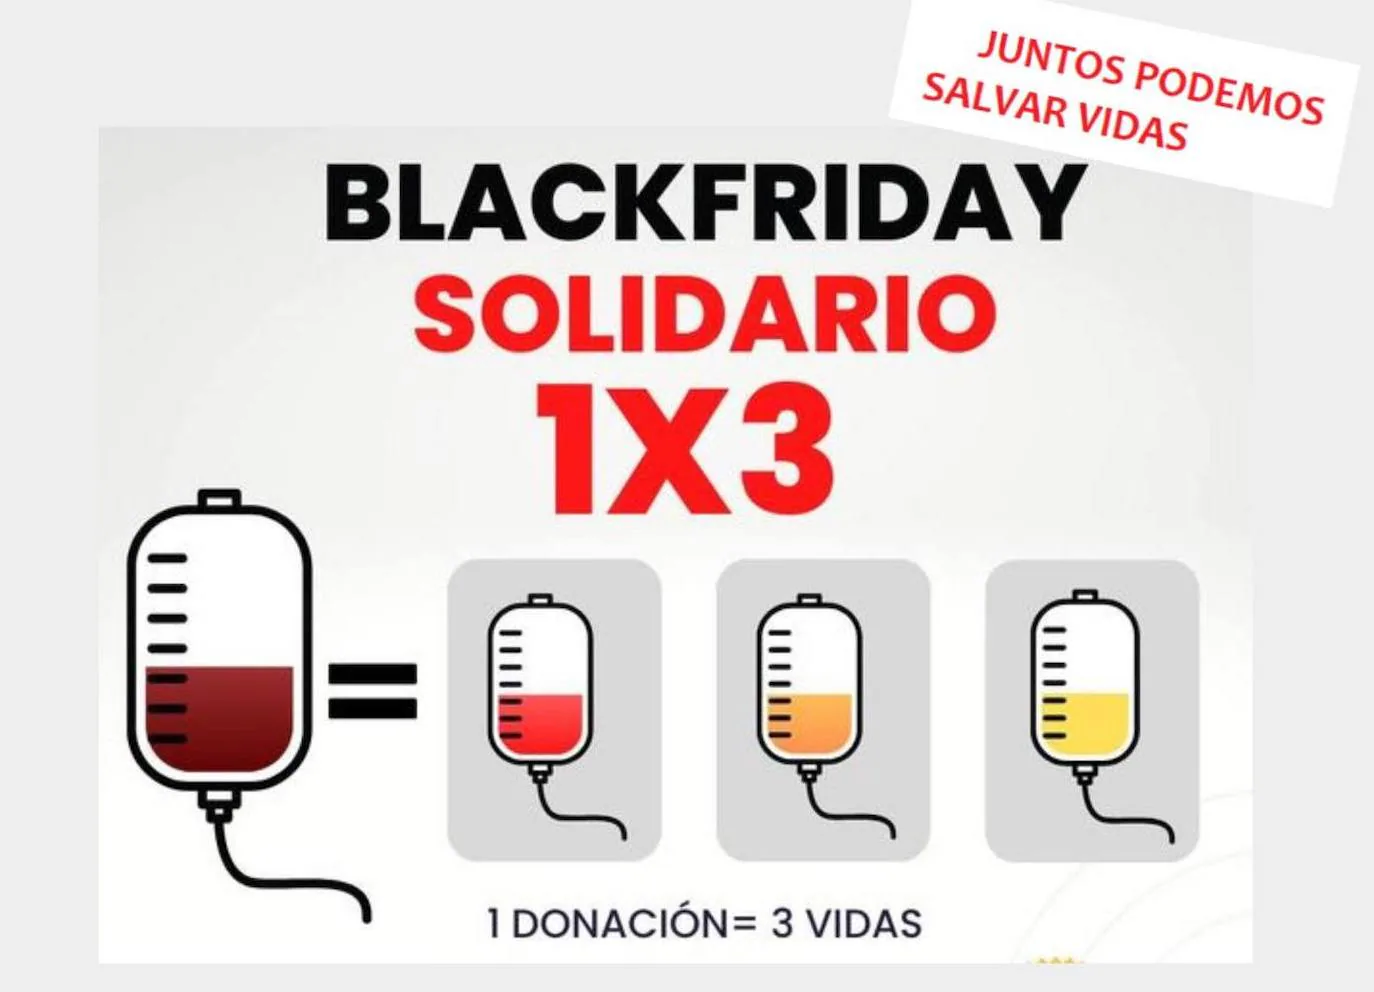 Huétor Vega, todo un ejemplo donando sangre en el 'Black Friday Solidario'